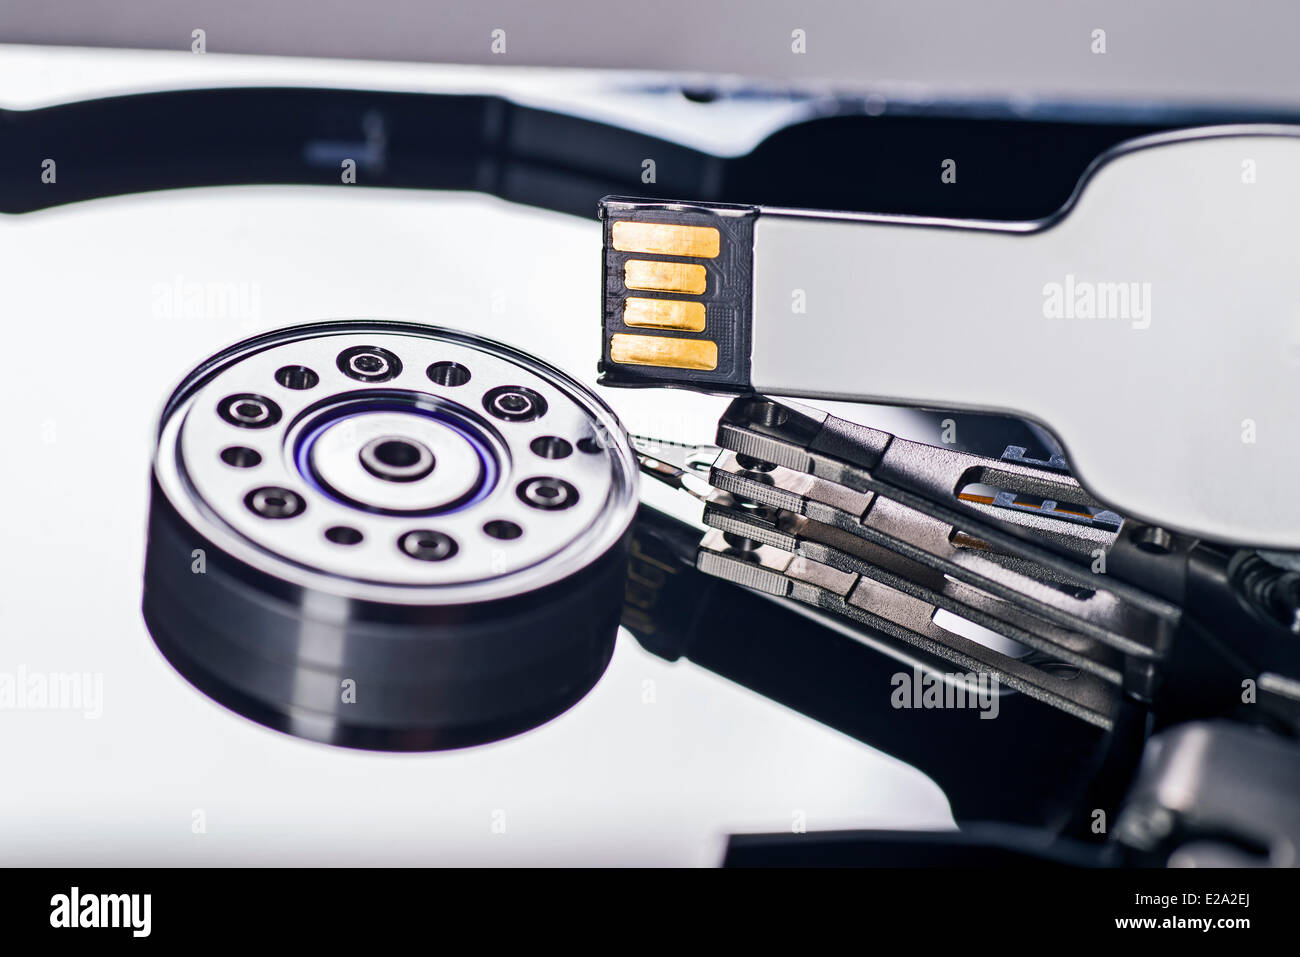 Dettaglio di un disco rigido con una unità flash USB Foto Stock